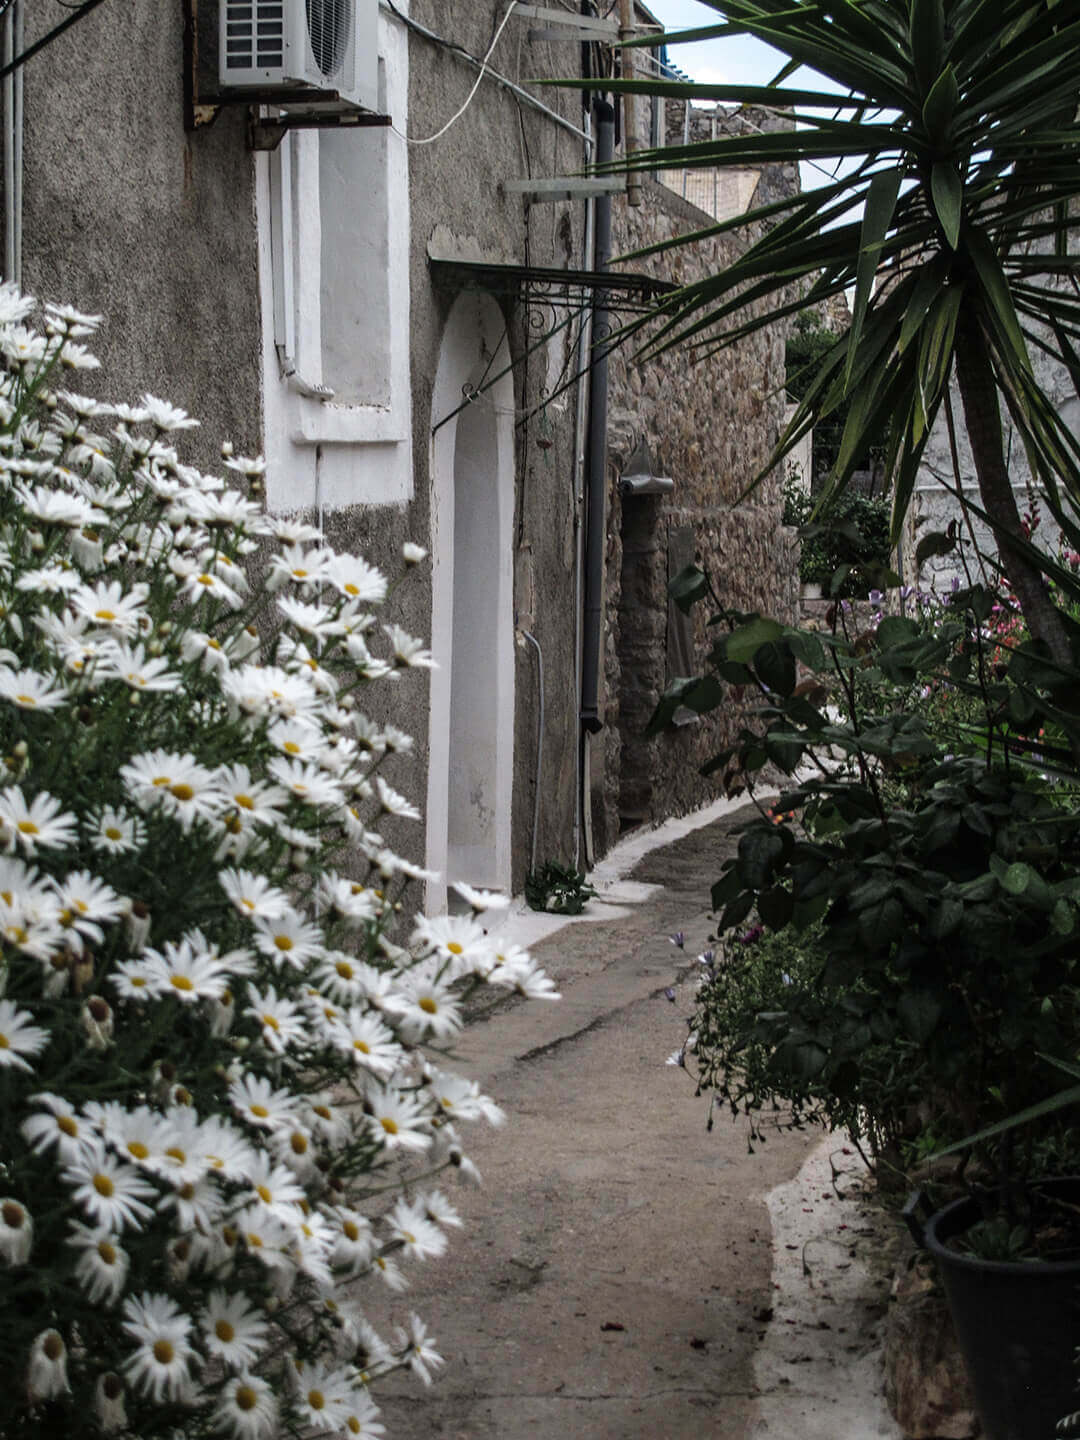 Vessa, a medieval village in south Chios